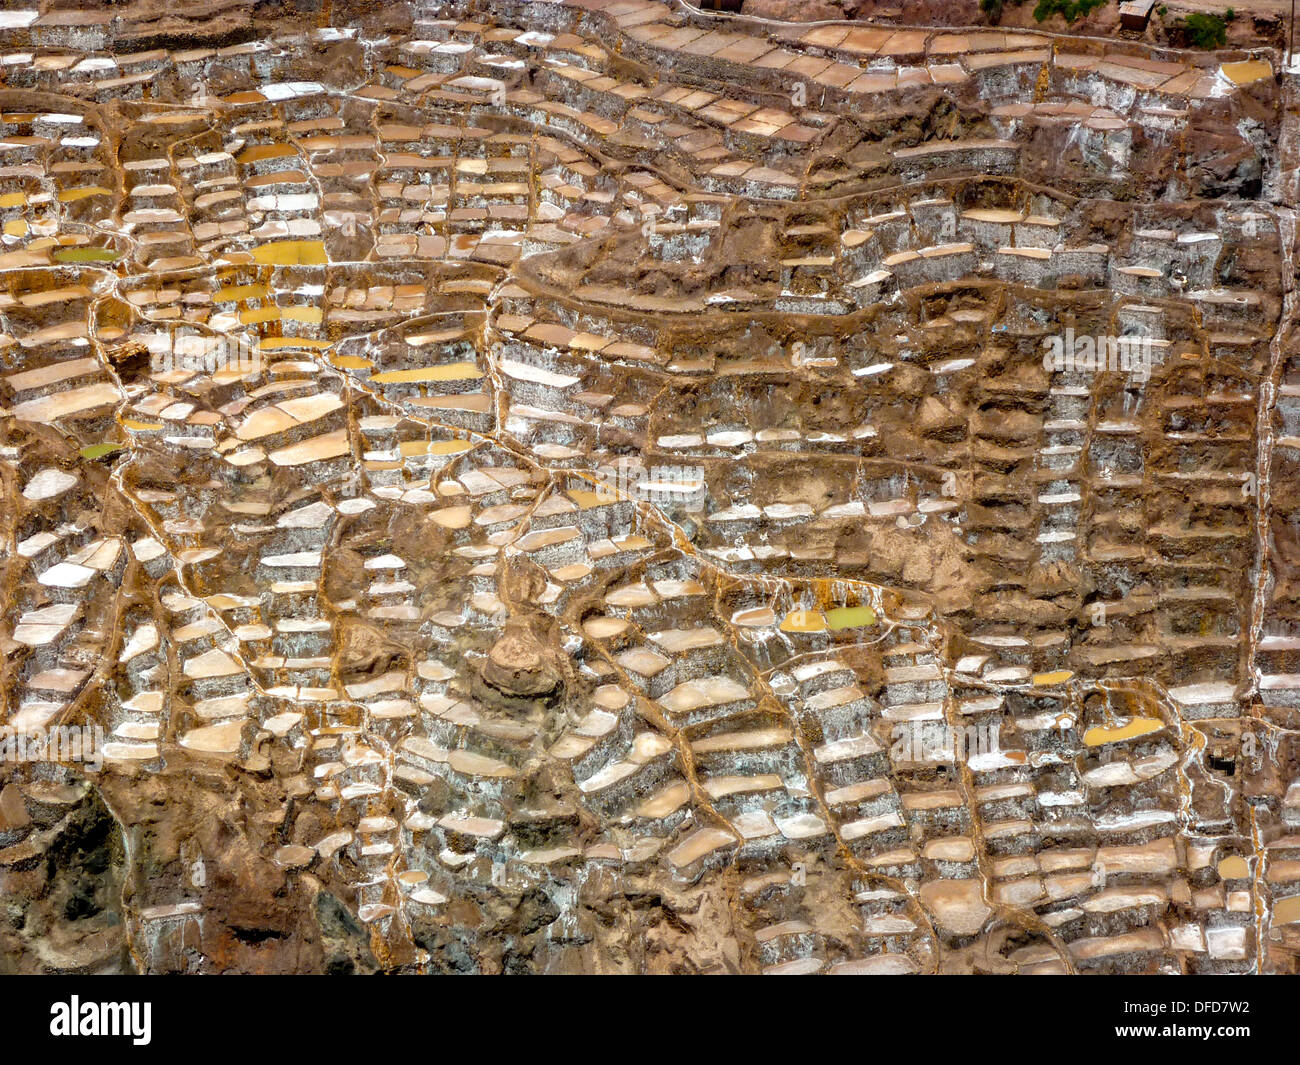 Les salines de Maras, dans la Vallée Sacrée des Incas, près de Cuzco, Pérou Banque D'Images